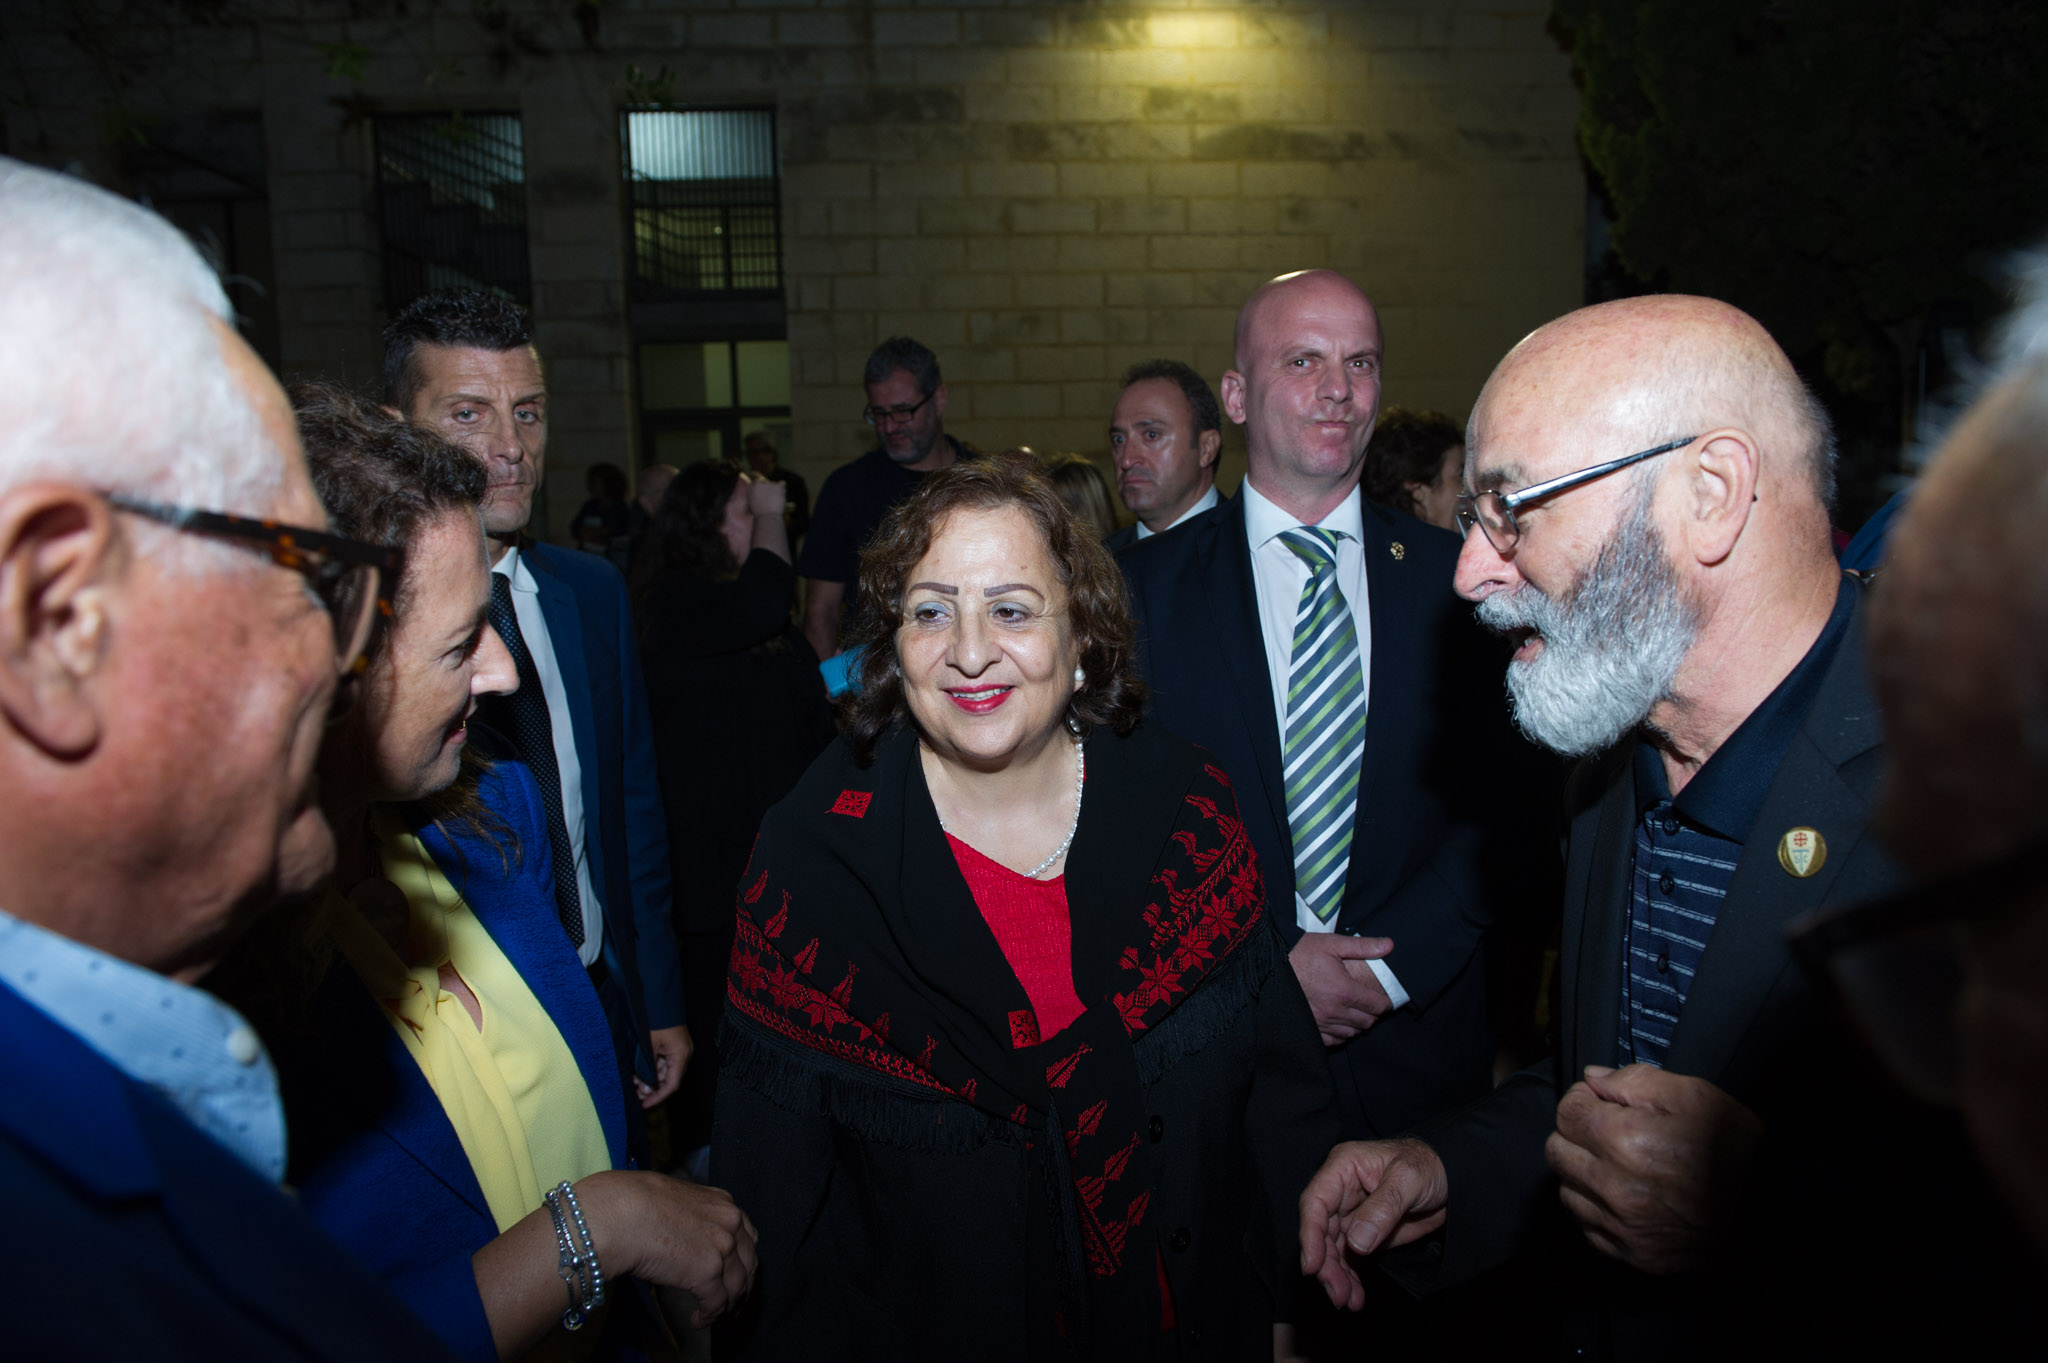 La visita dell’Ambasciatrice di Palestina a Matera